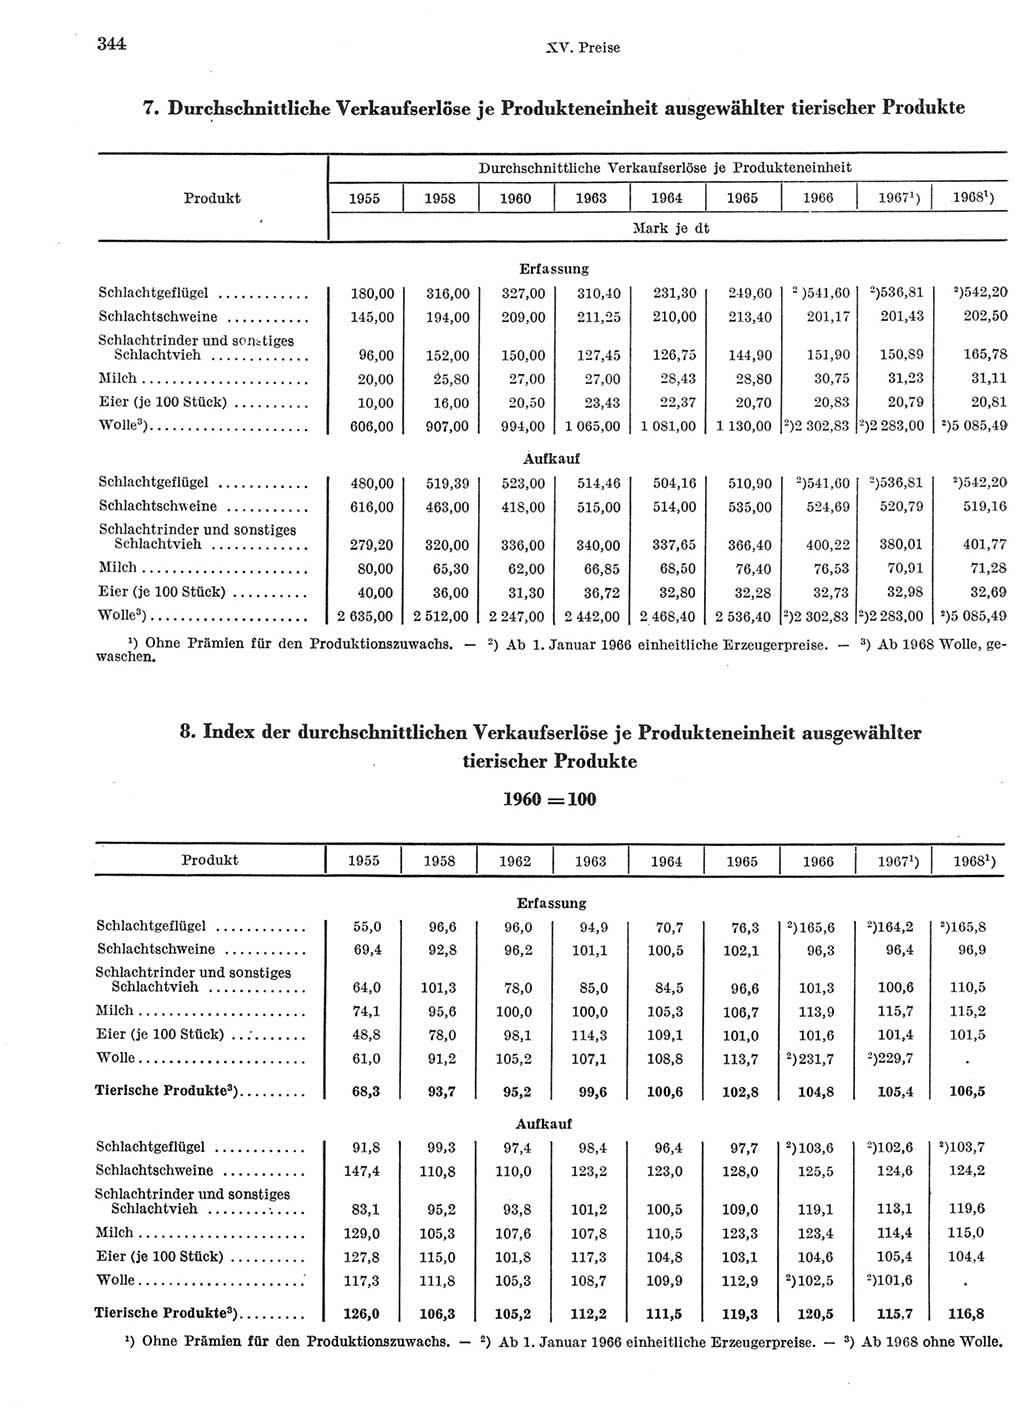 Statistisches Jahrbuch der Deutschen Demokratischen Republik (DDR) 1969, Seite 344 (Stat. Jb. DDR 1969, S. 344)